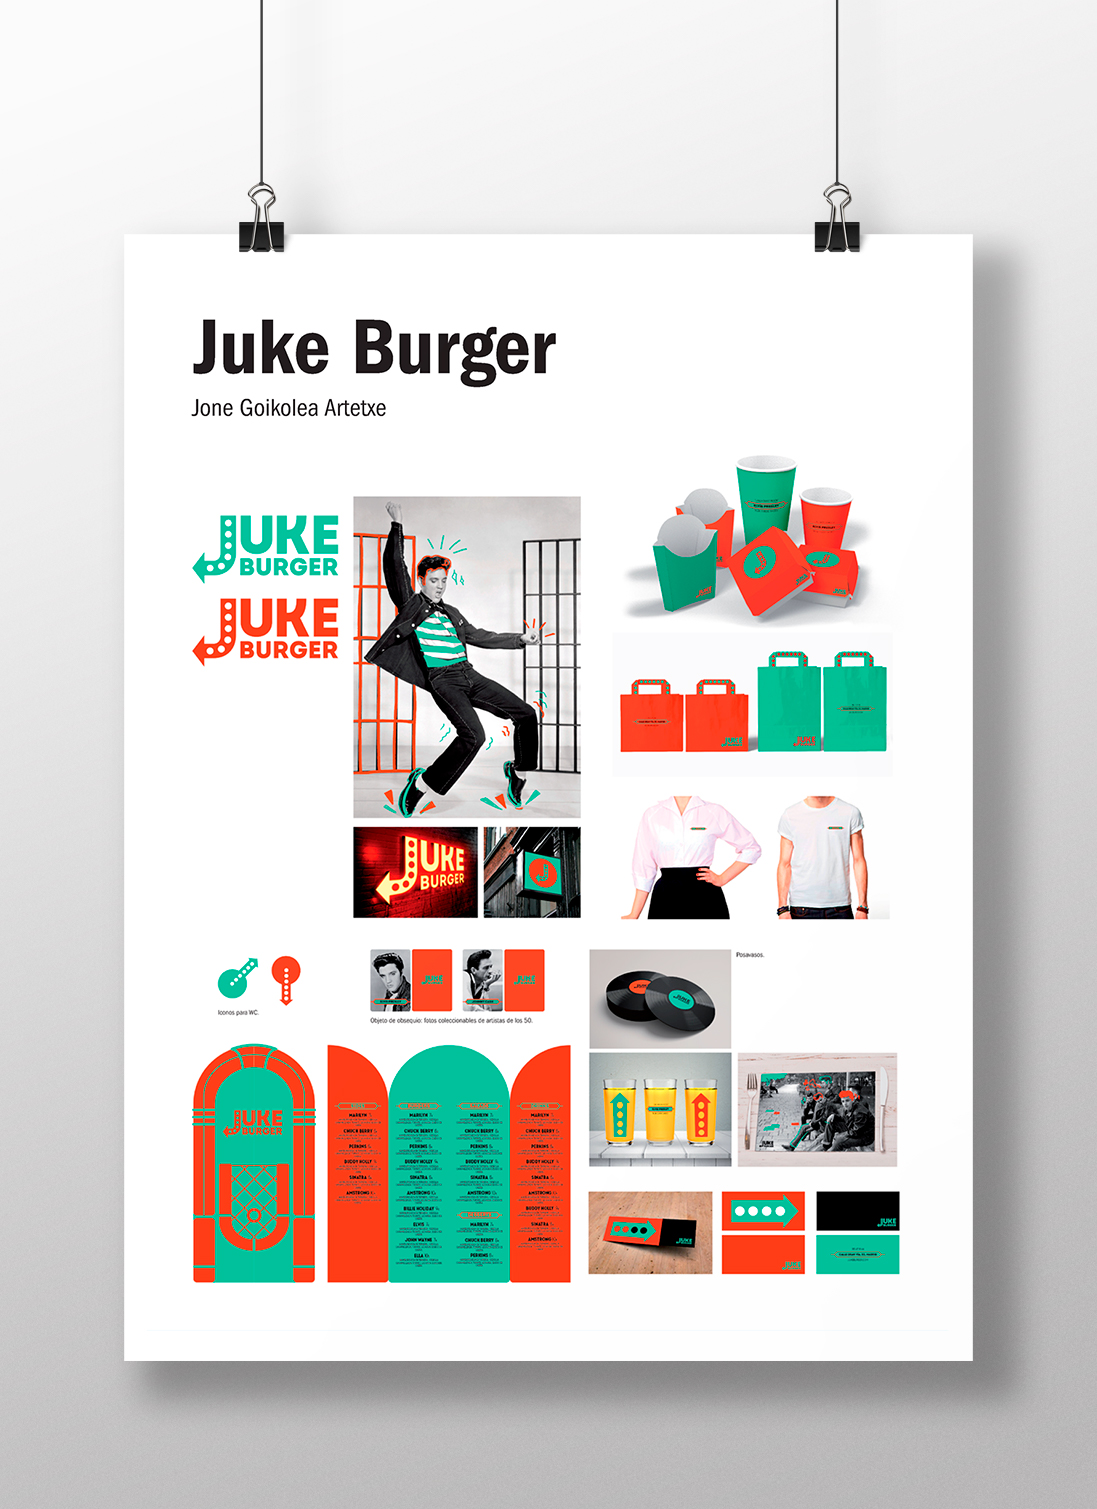 Juke Burger by Jone Goikolea Artetxe - Creative Work